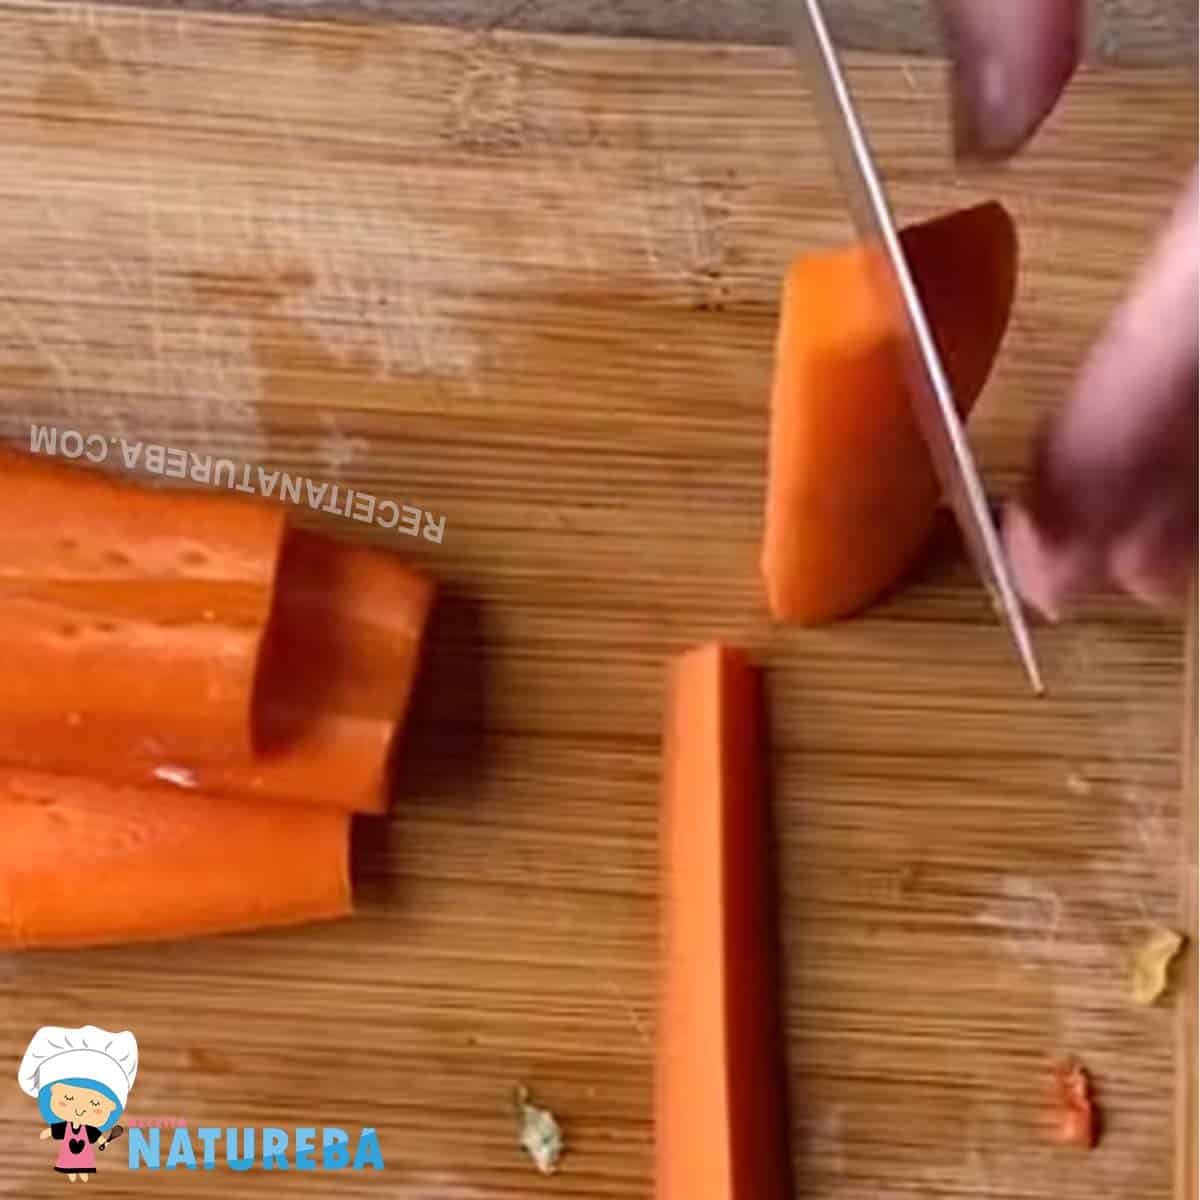 cortando a cenoura em tiras